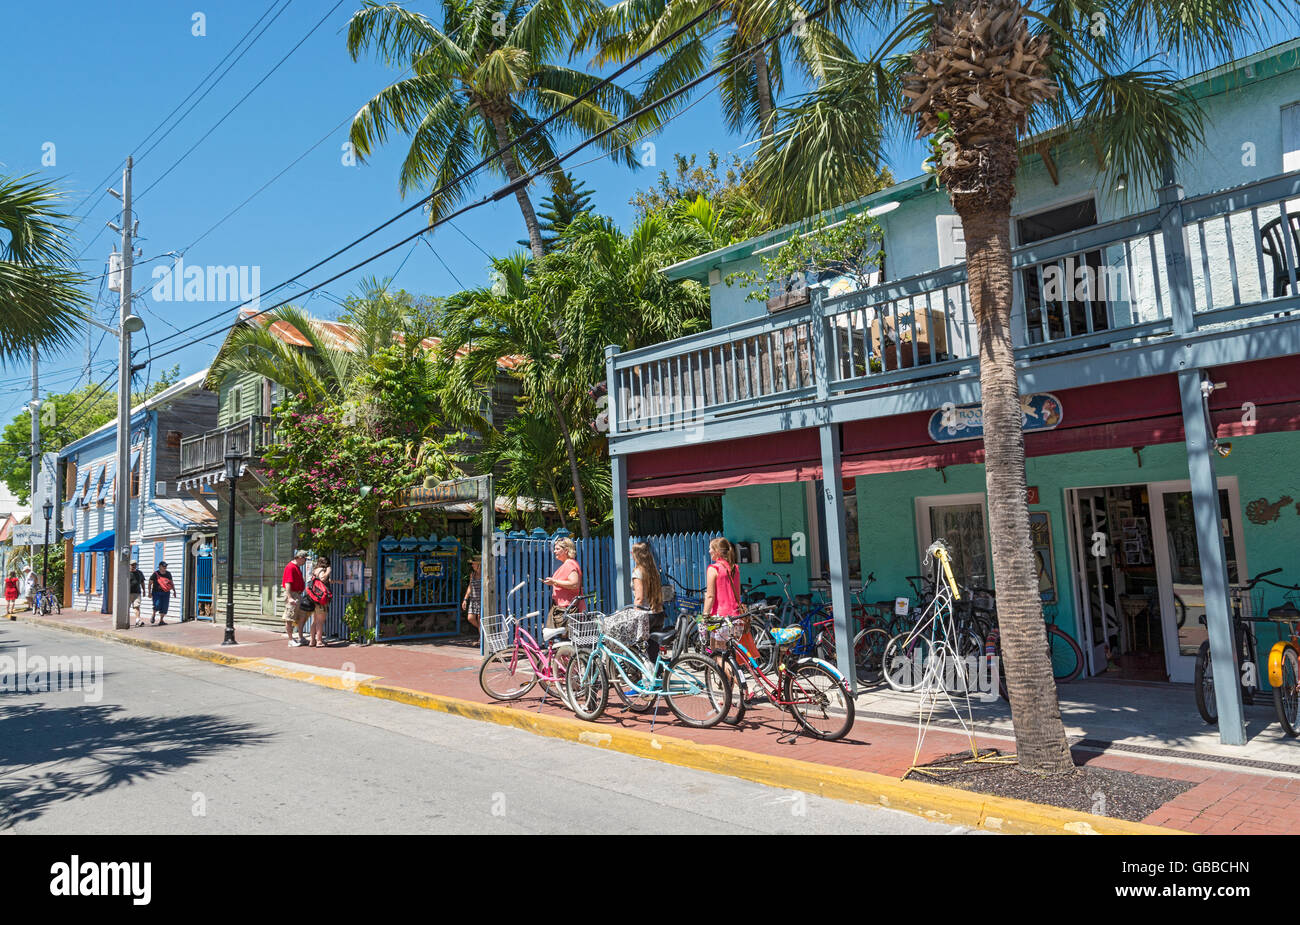 Floride, Key West, Bahama Village, boutiques, restaurants Banque D'Images